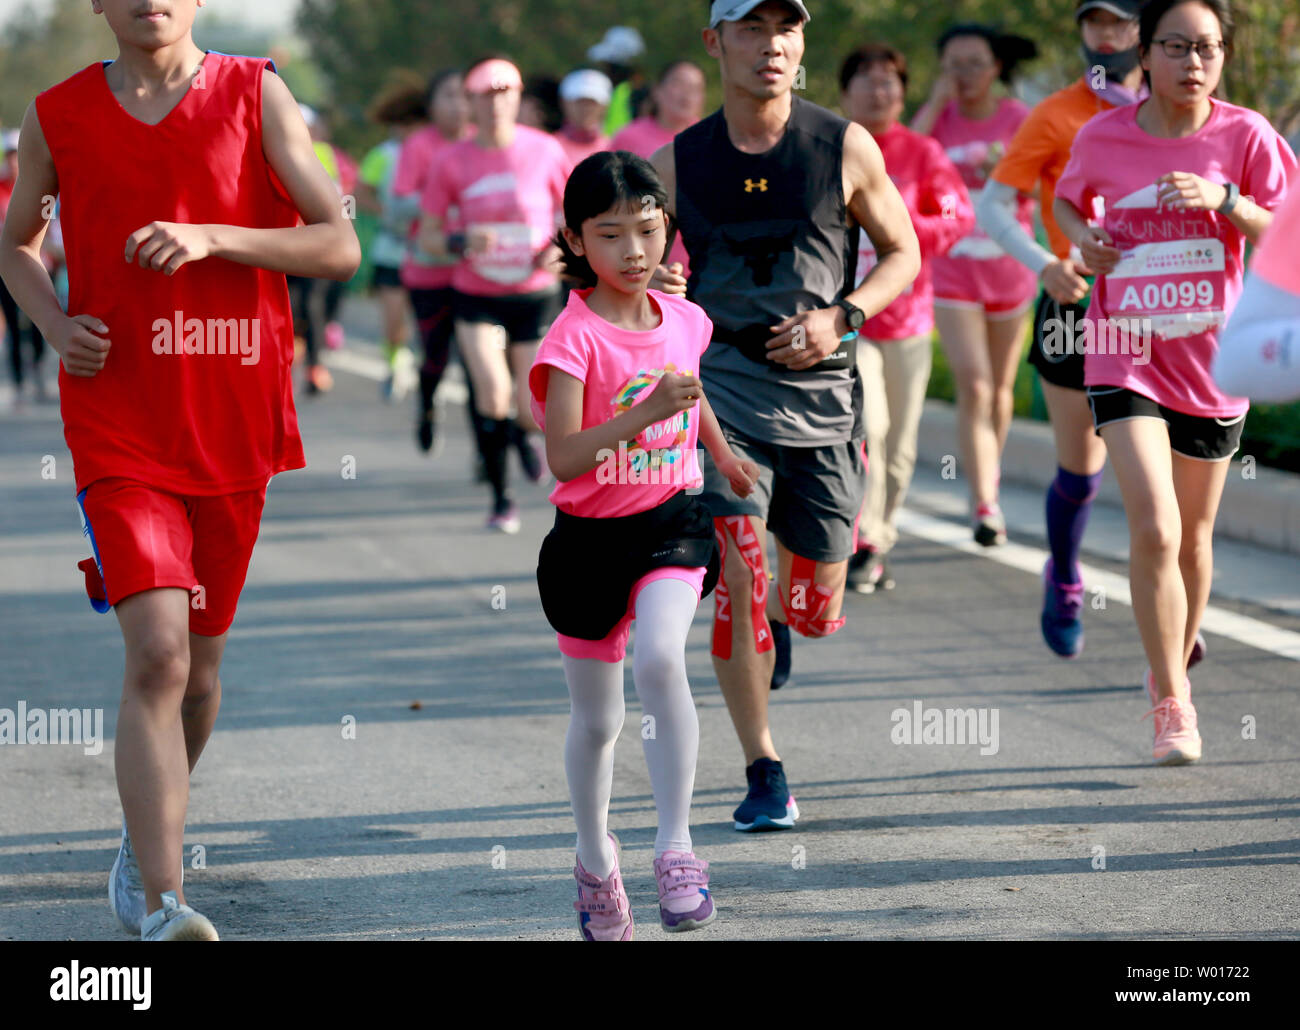 A girl runs hard in a 5-kilometer marathon. Stock Photo